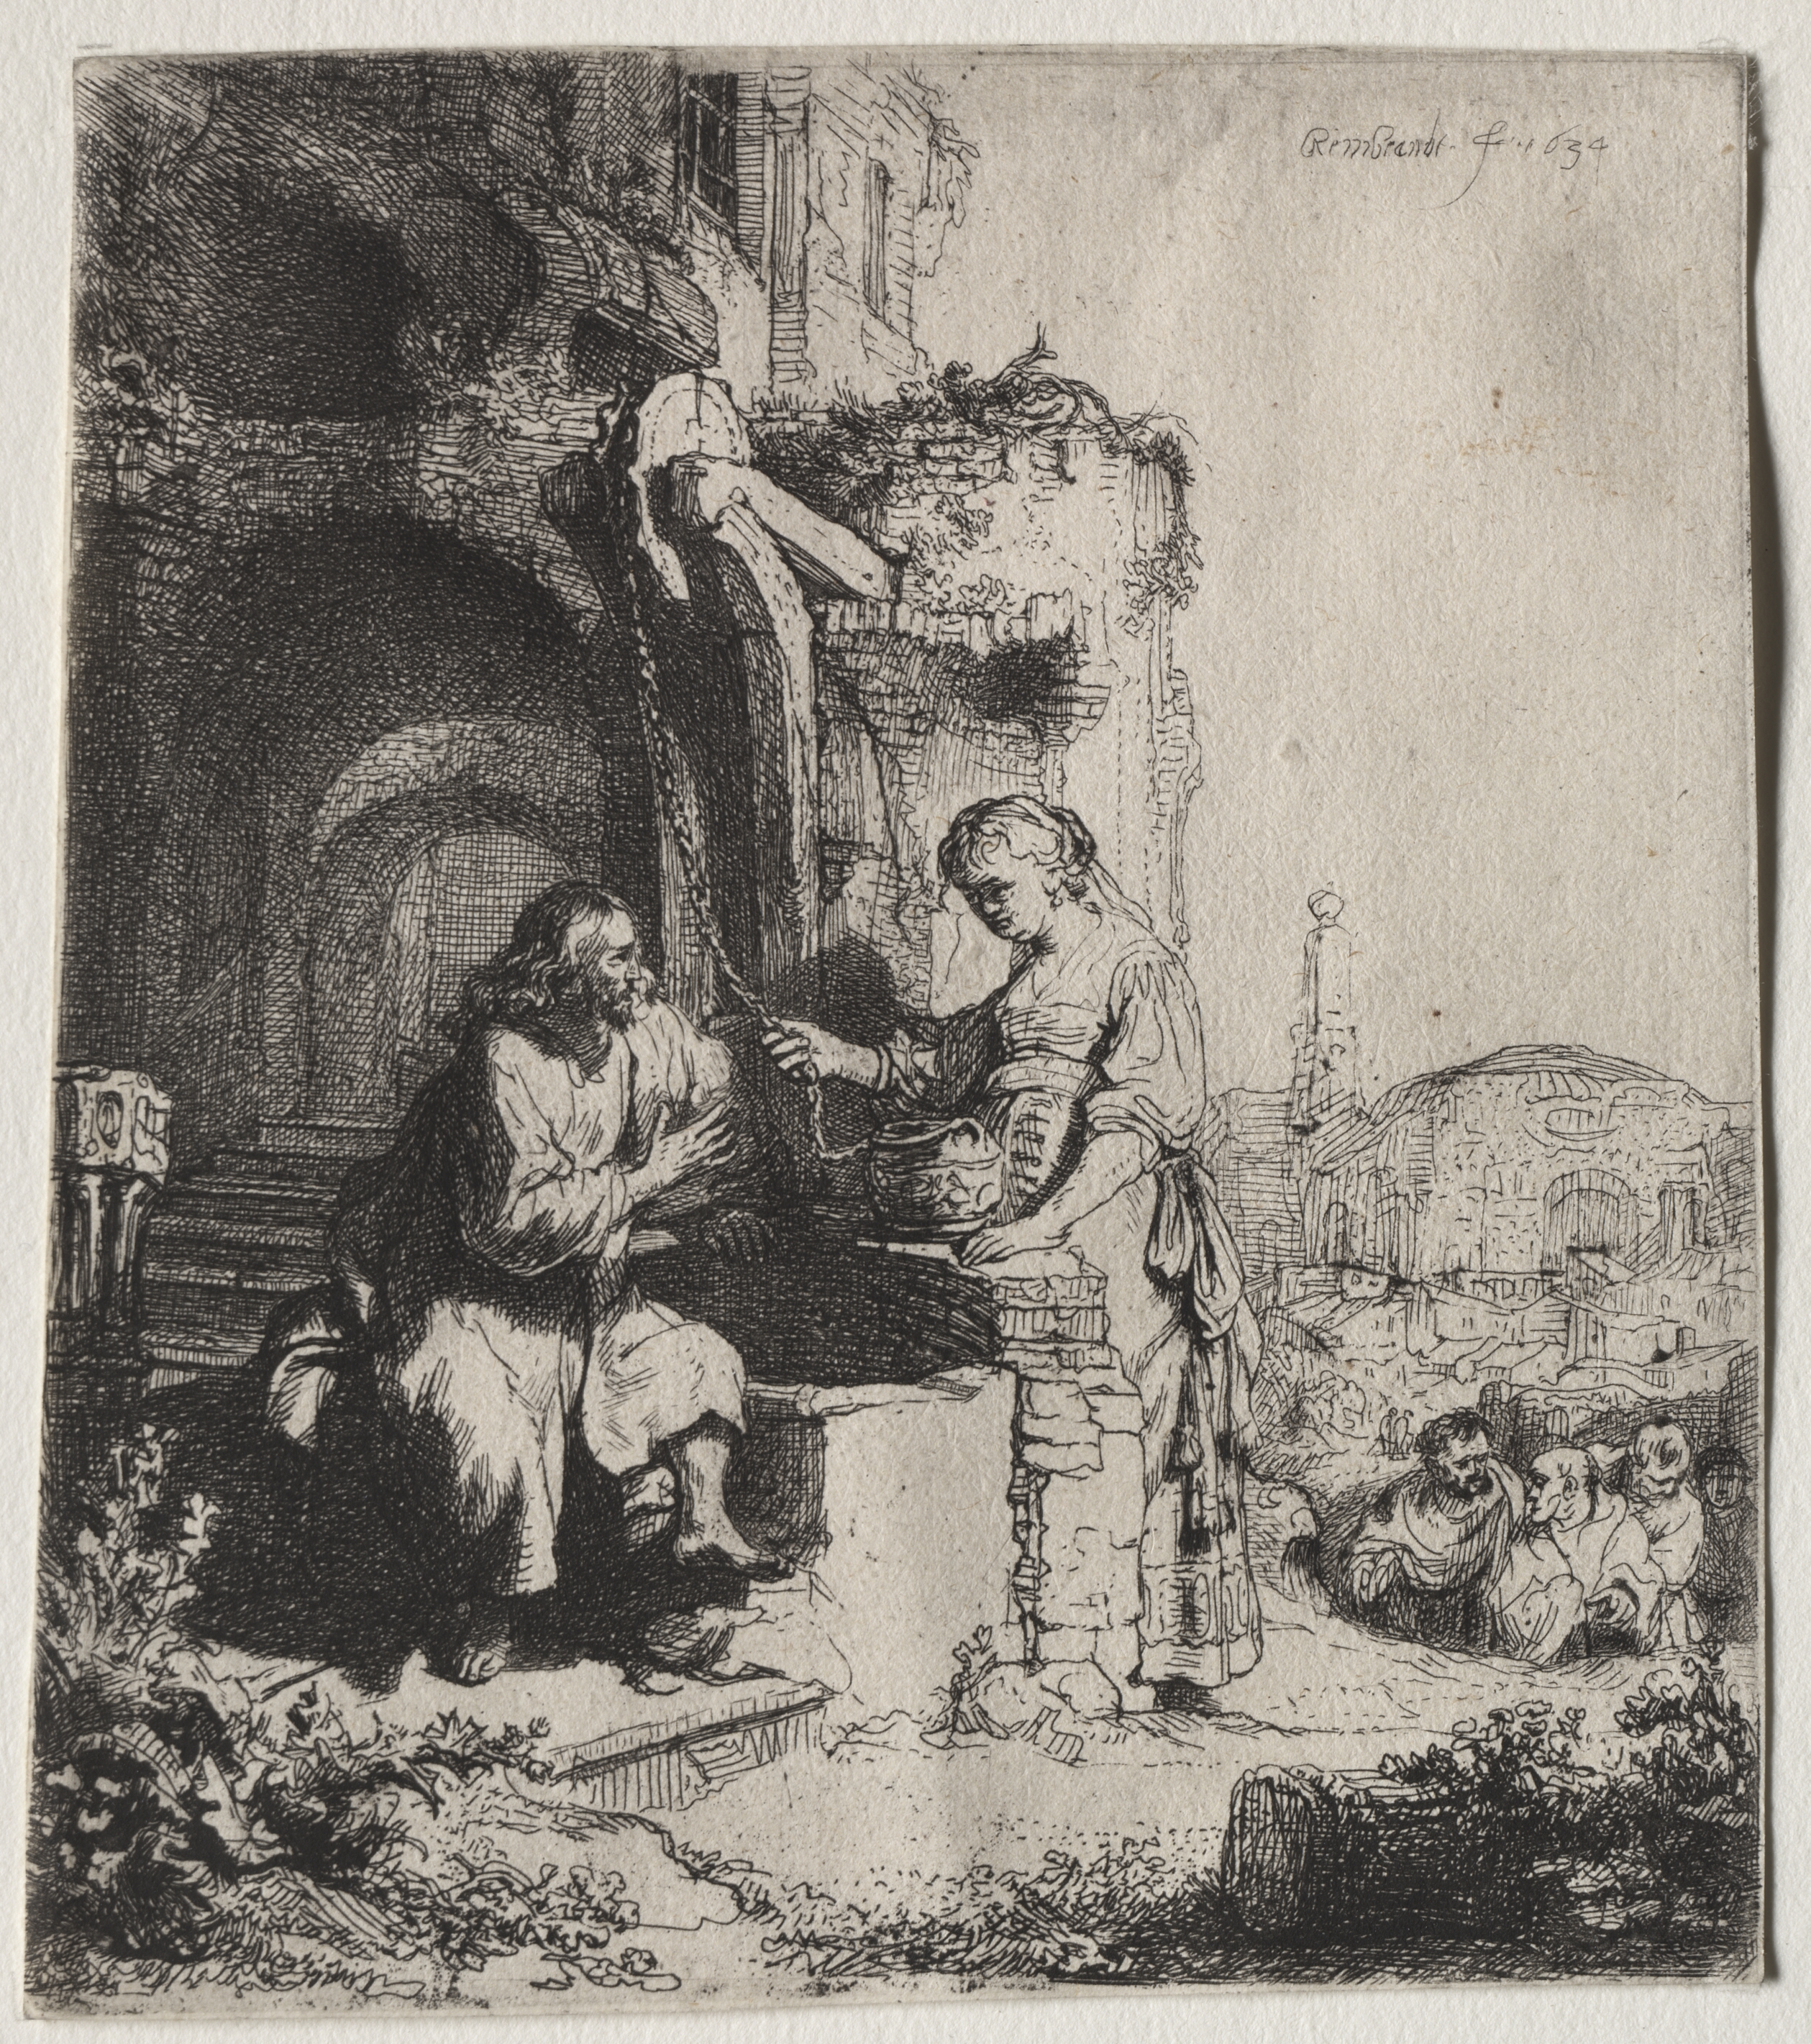 Christ and the Woman of Samaria  Among Ruins